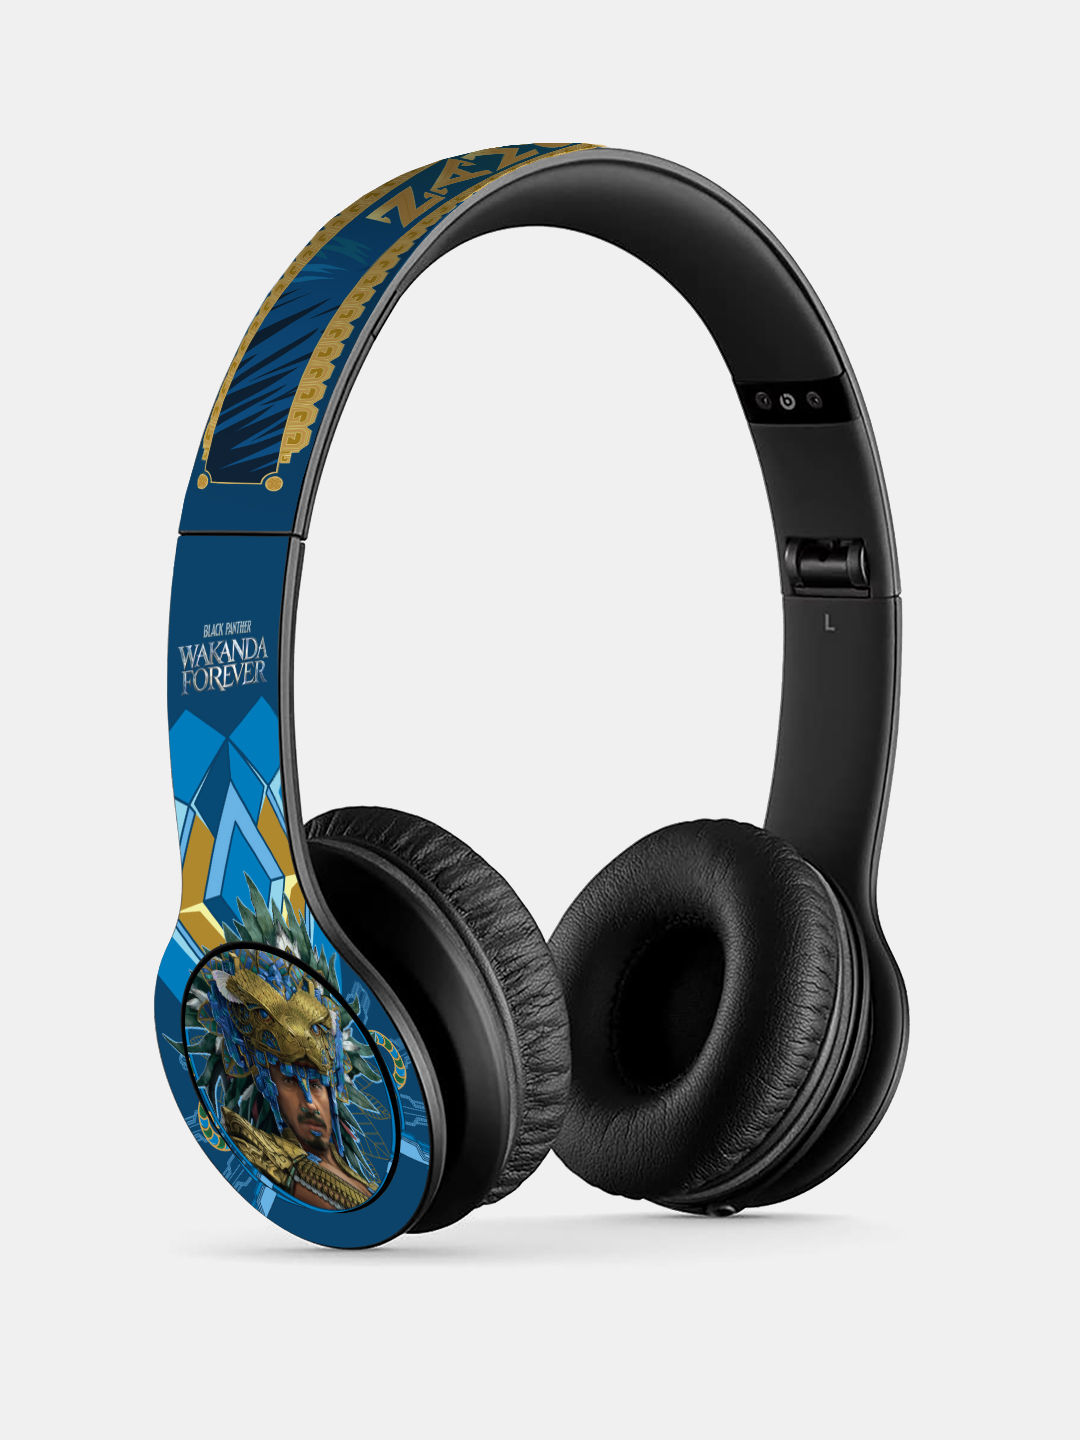 Buy Namor Black Panther - P47 Wireless On Ear Headphones Headphones Online